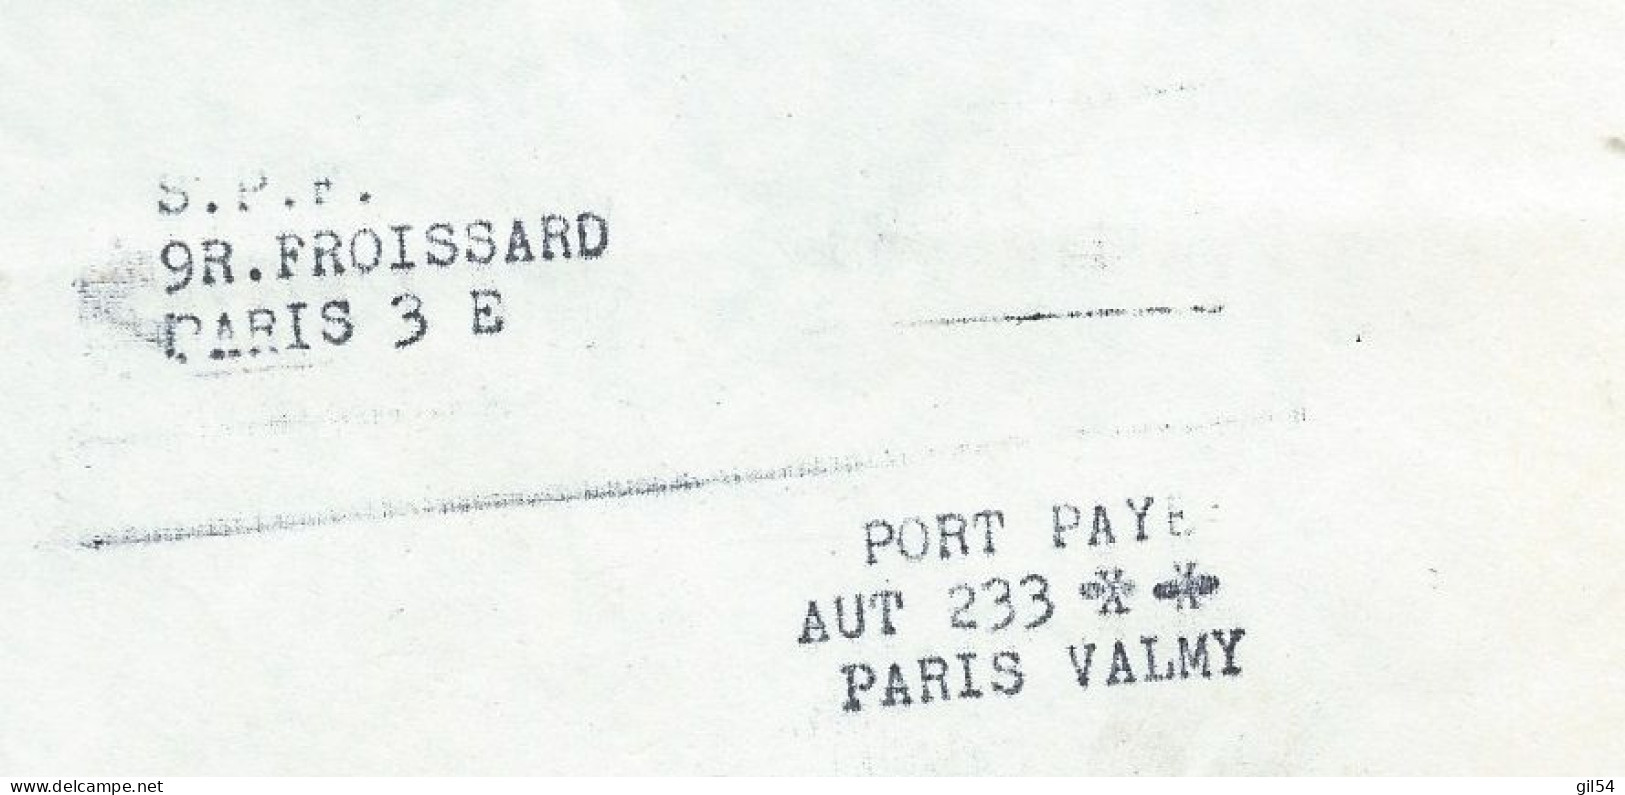 Lac En Port Paye Du Secours Populaire, Contenant Carnets Bon Du Soleil Pour Enfants Et Handicapes 19/05/1972  MALB13705 - Documents Historiques